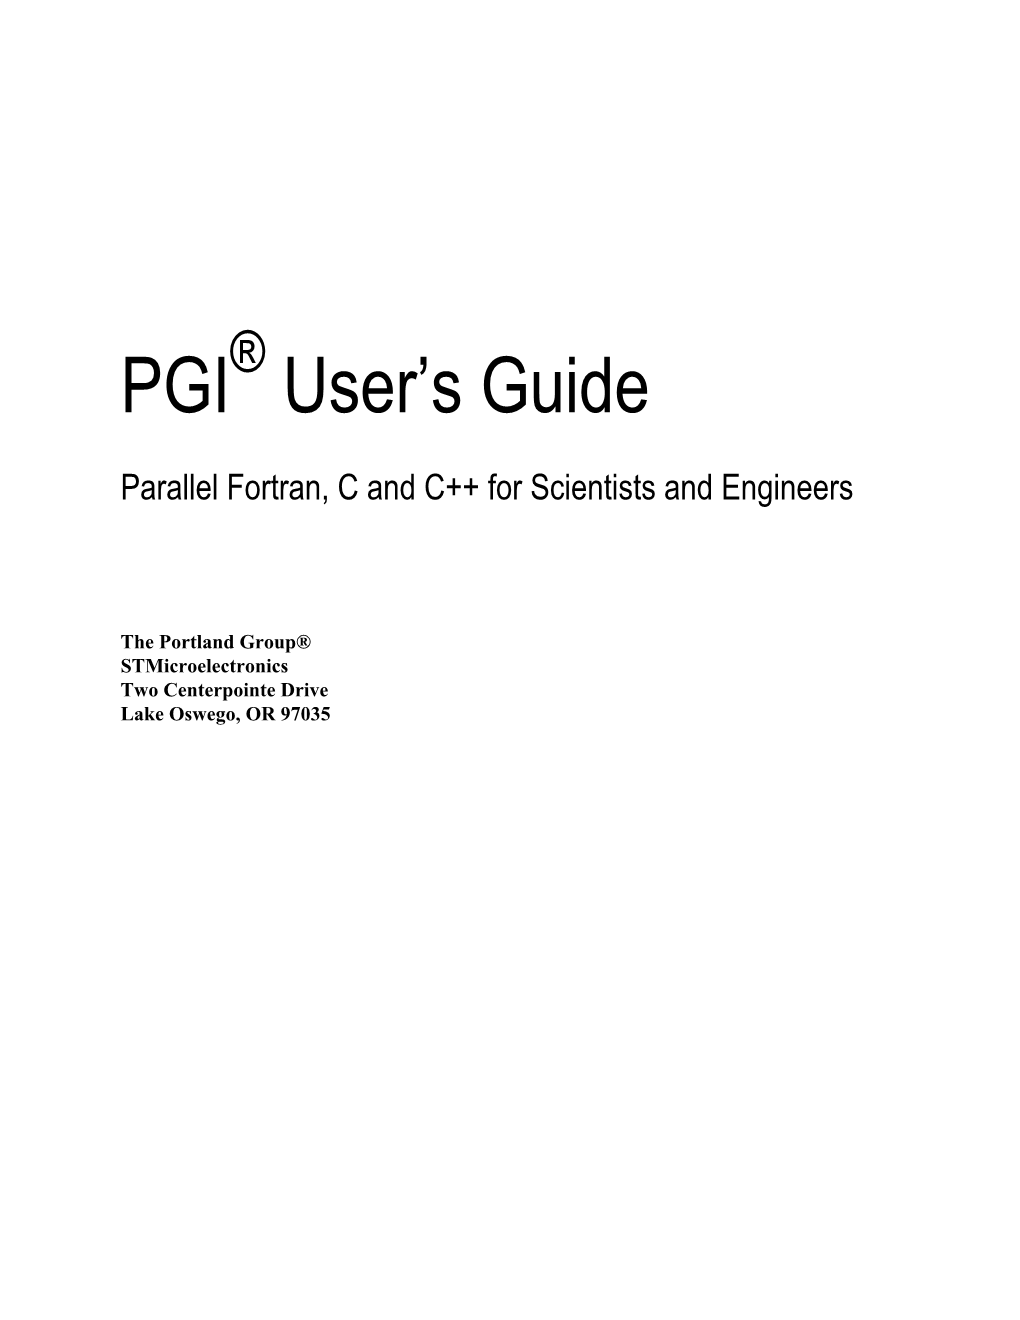 PGI Fortran Guide